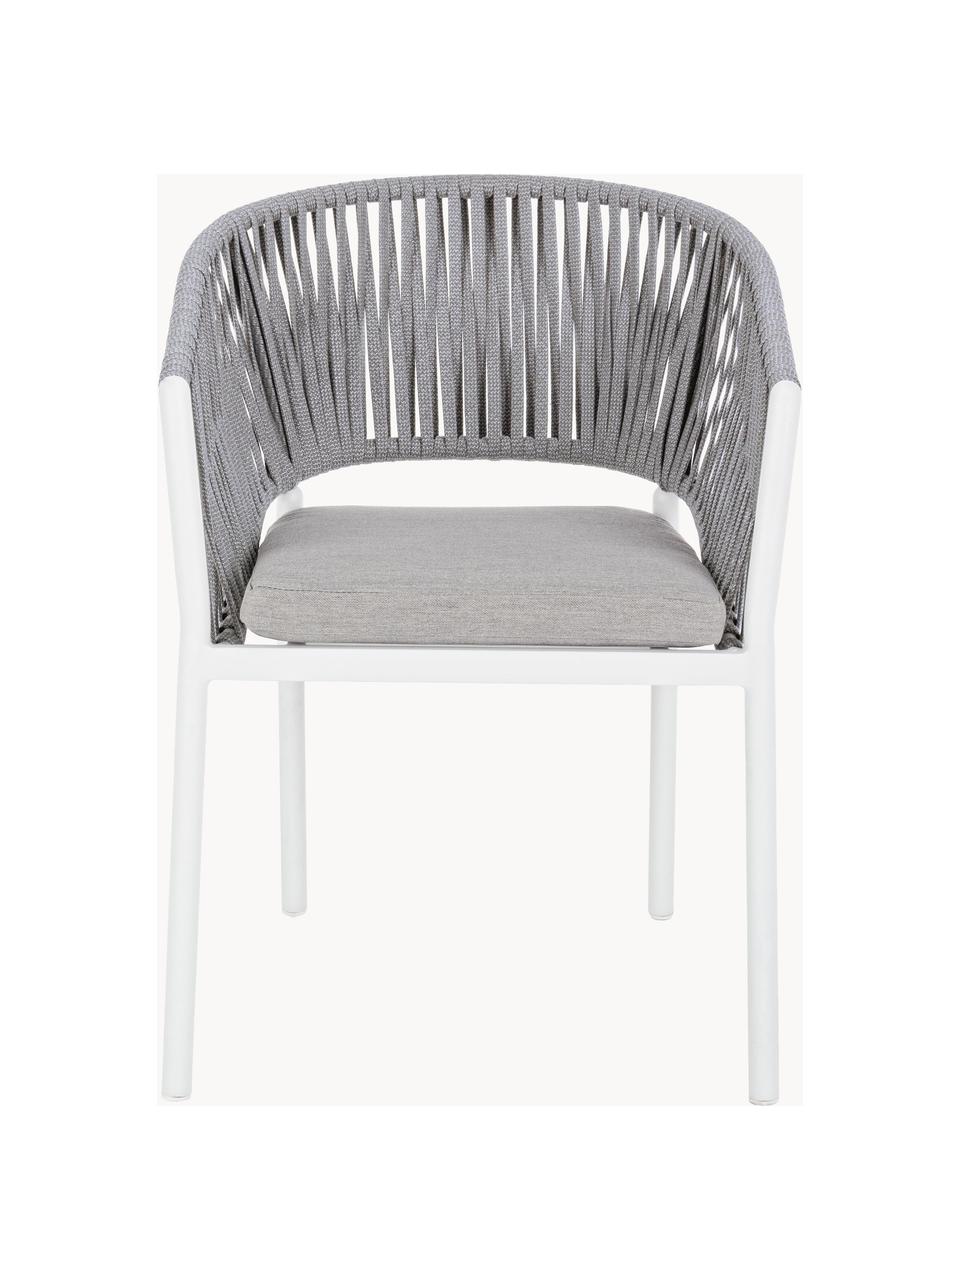 Chaise de jardin empilable Florencia, Tissu gris clair, blanc, larg. 60 x haut. 80 cm